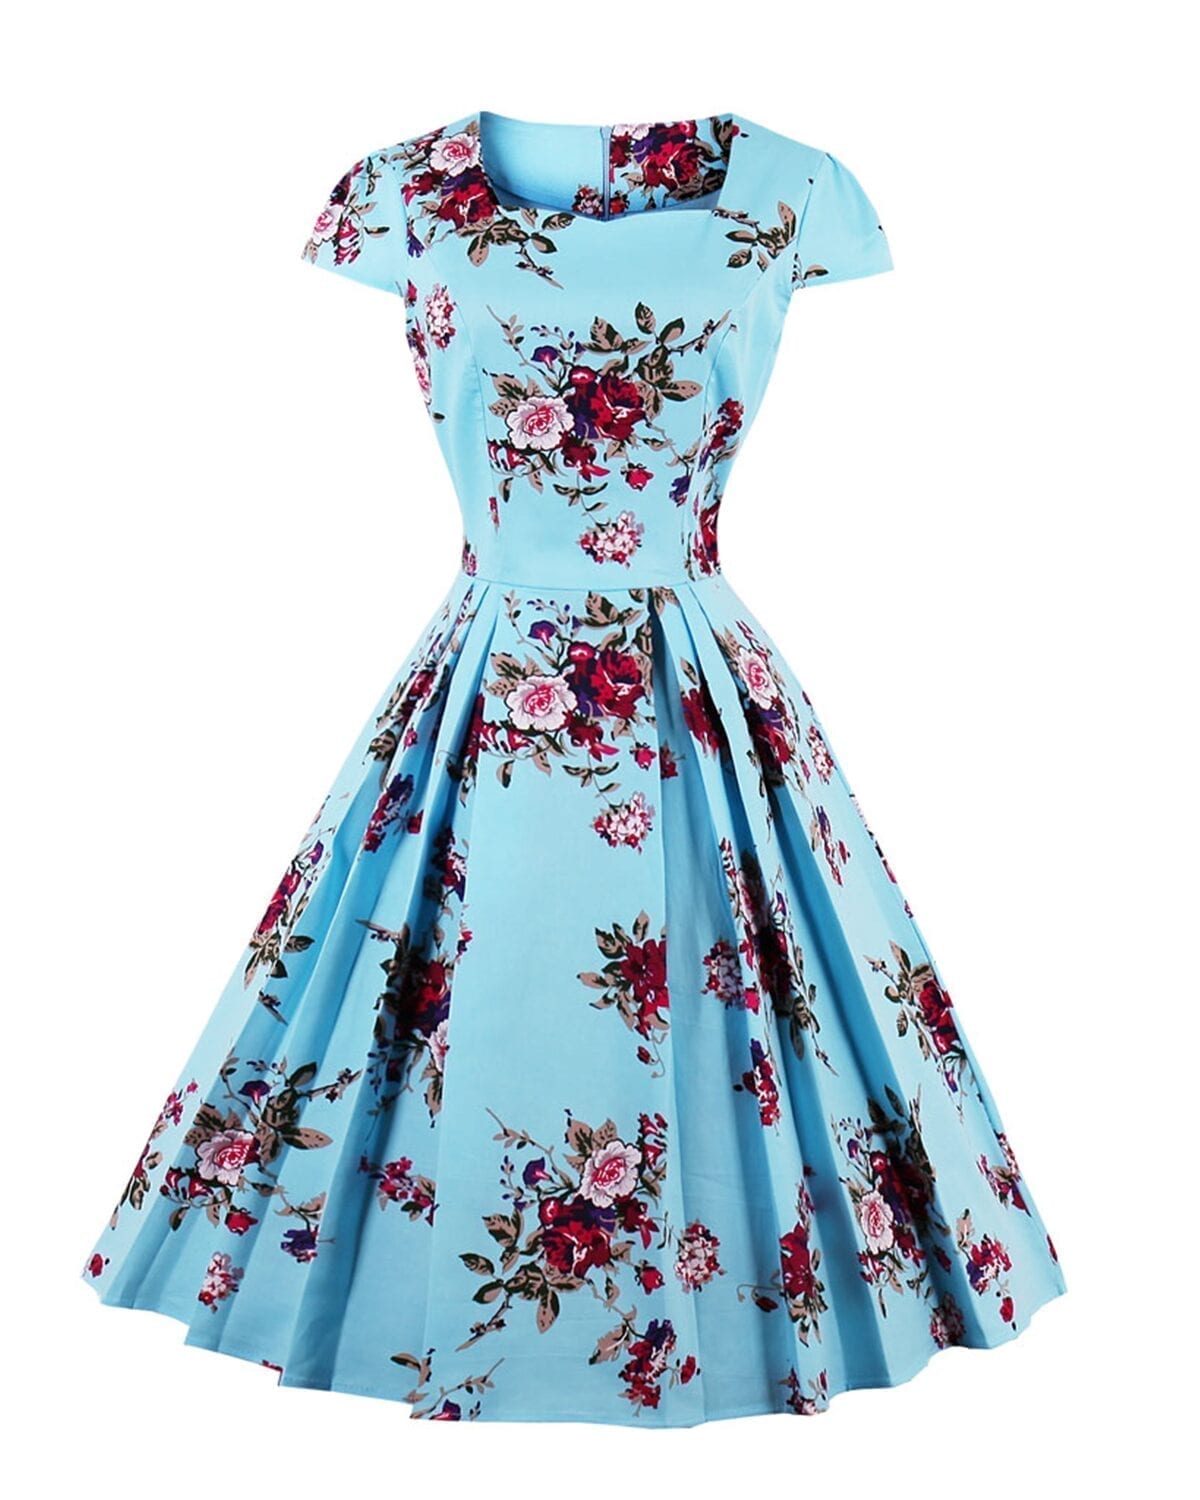 Retro Vintage Floral Print A-Line Dress | Uniqistic.com